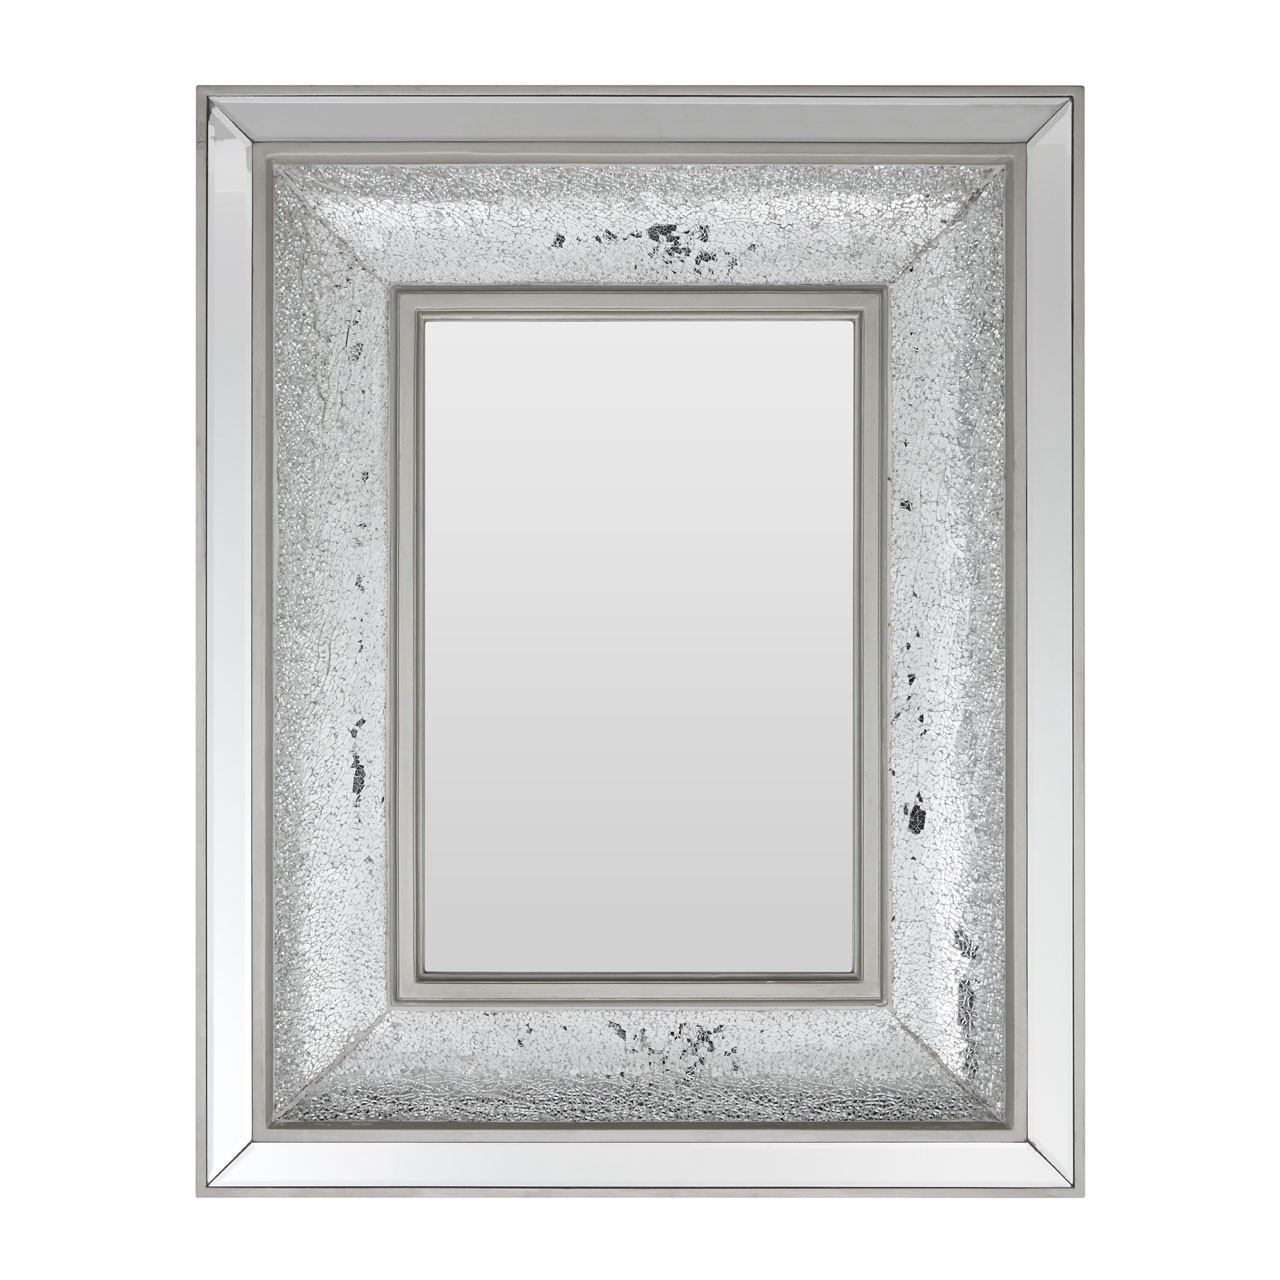 Prime Furnishing Silver Wallis Wall Mirror